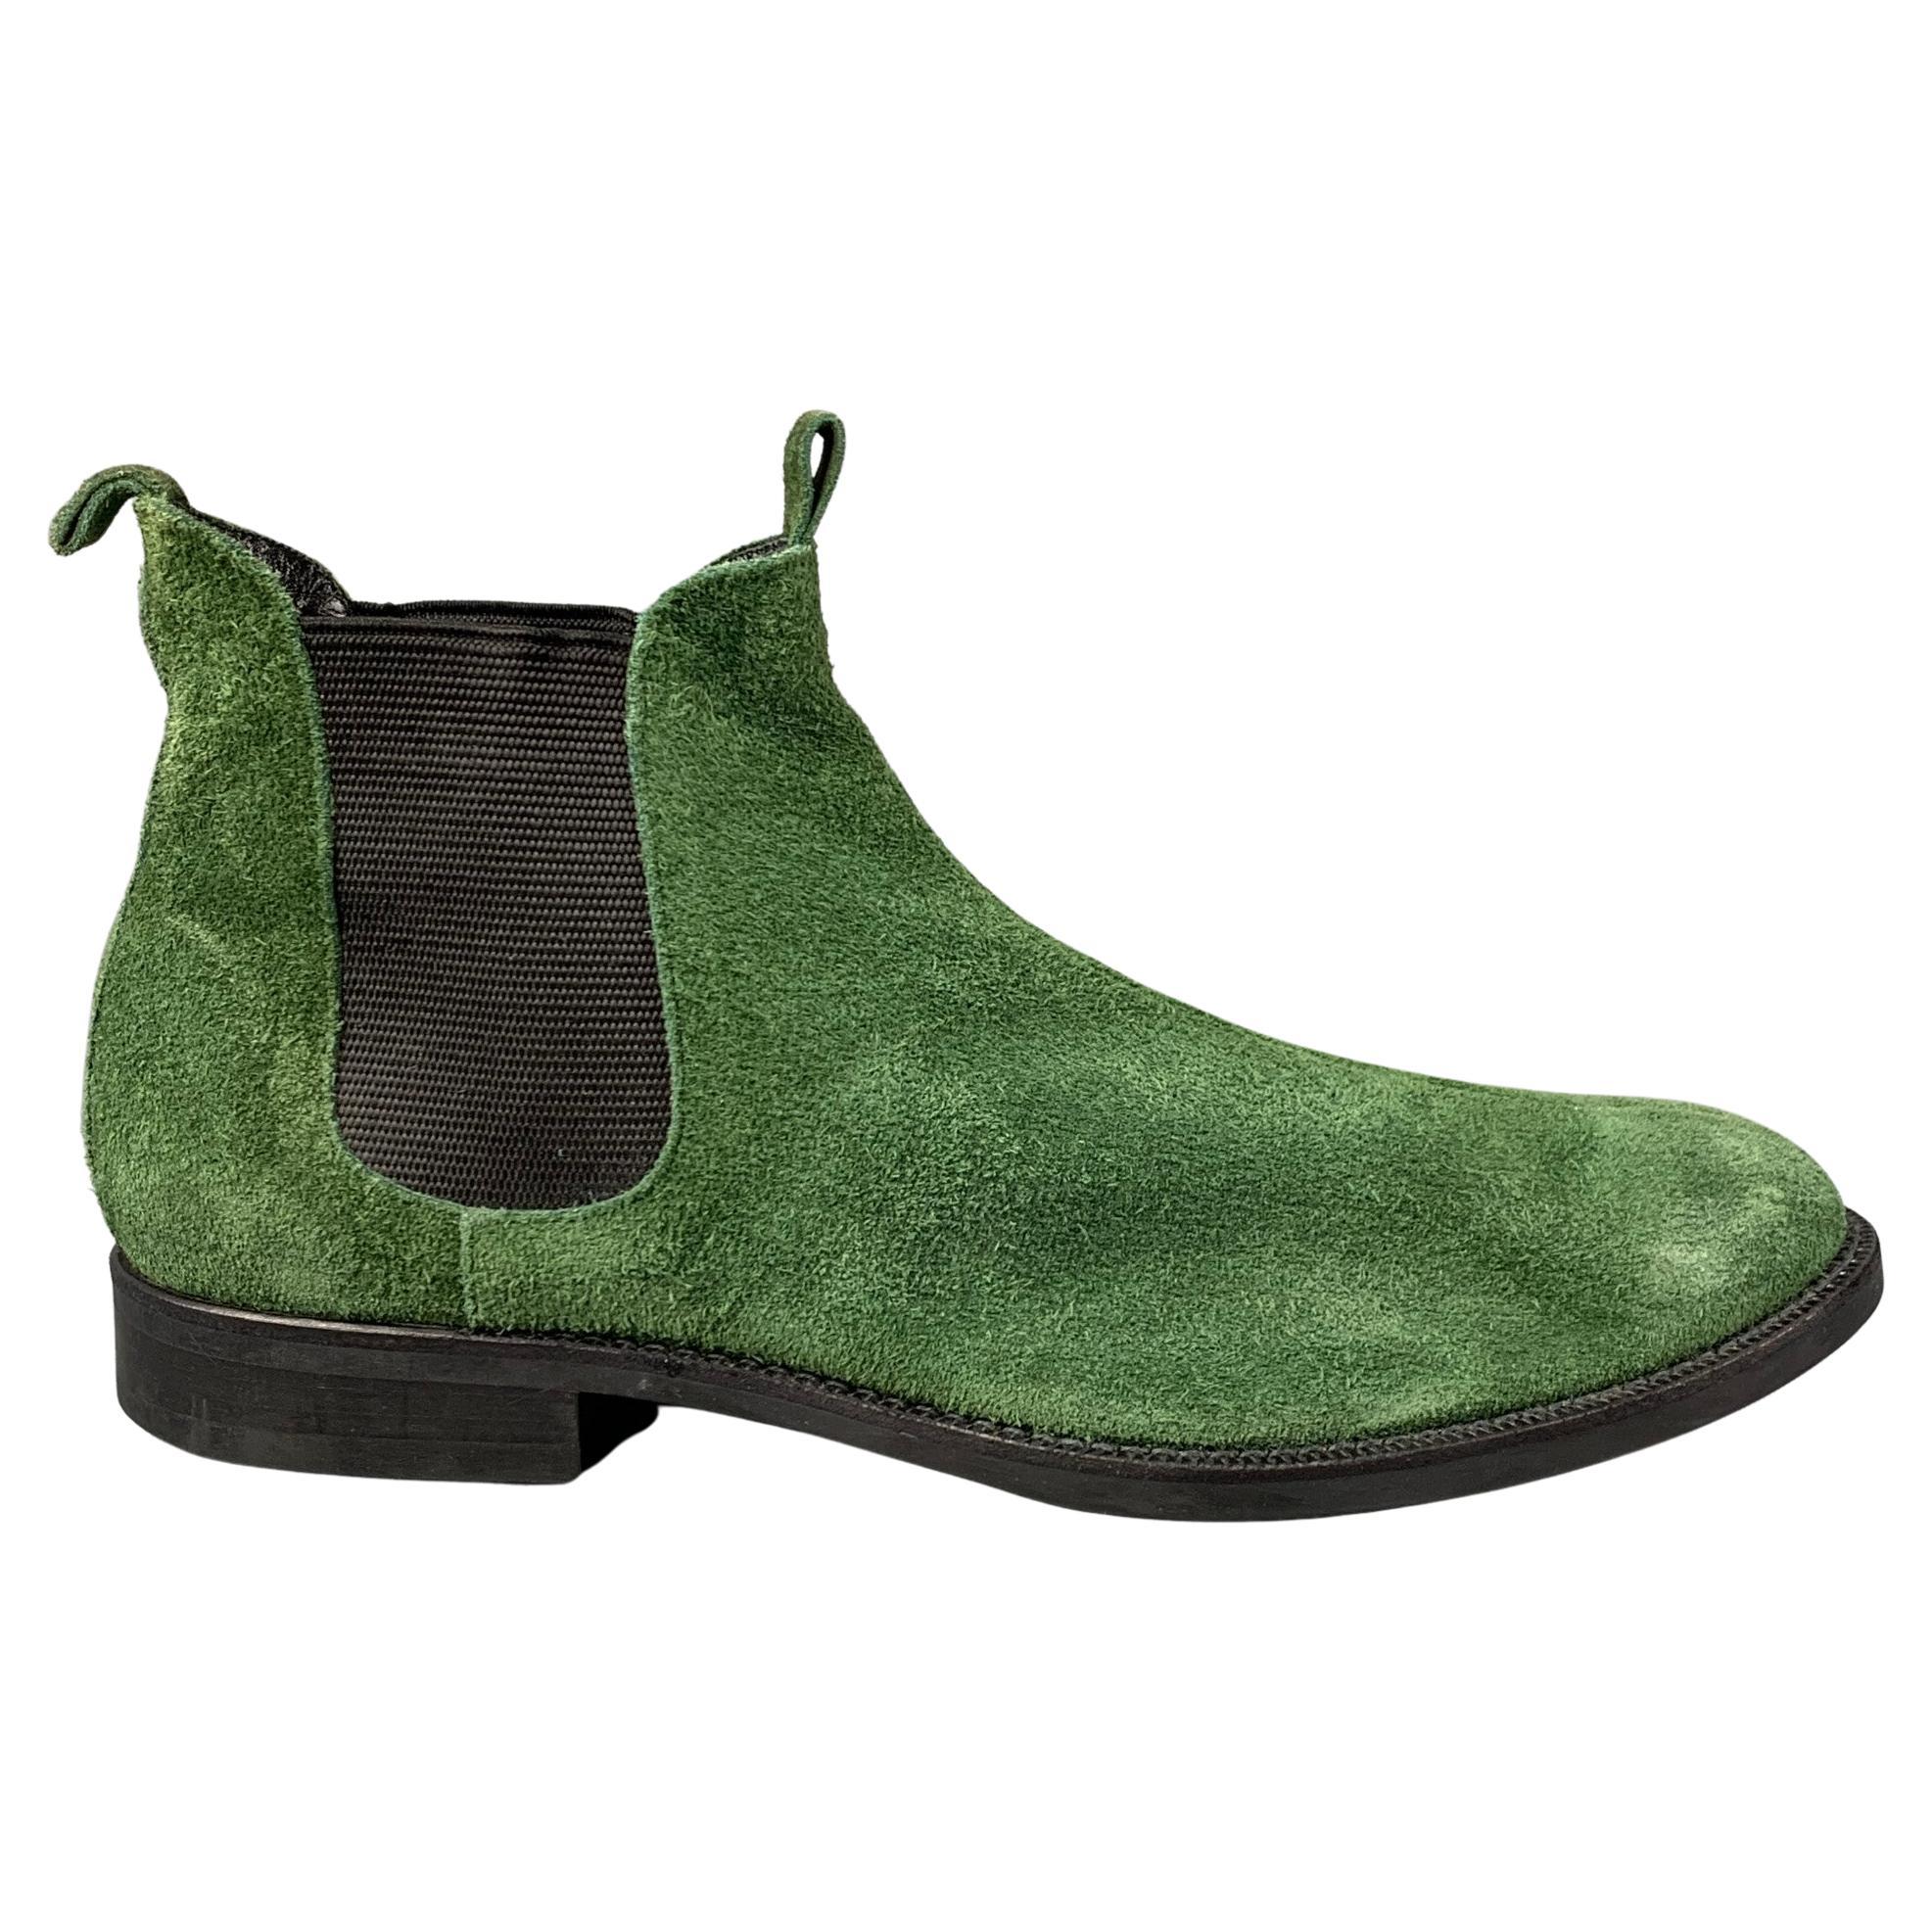 COMME des GARCONS HOMME PLUS Size 10 Green Black Suede Ankle Boots